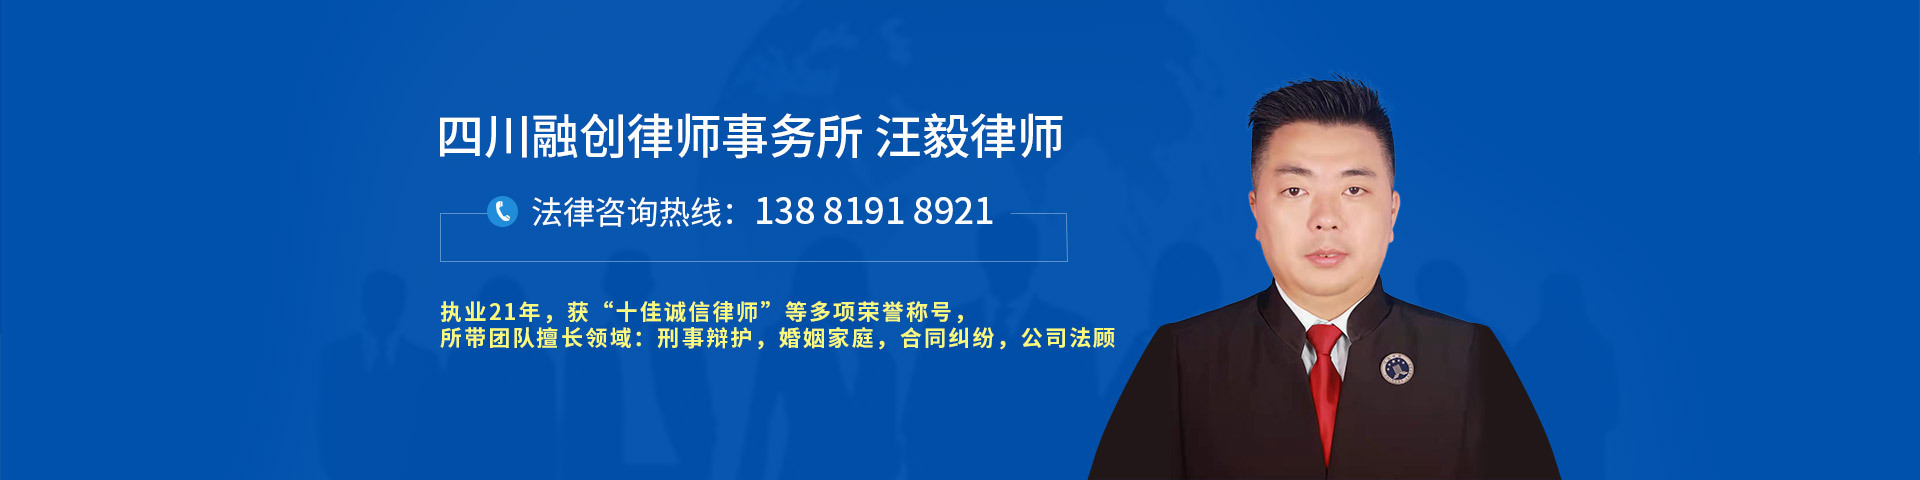 四川融创律师事务所的律师团队网站